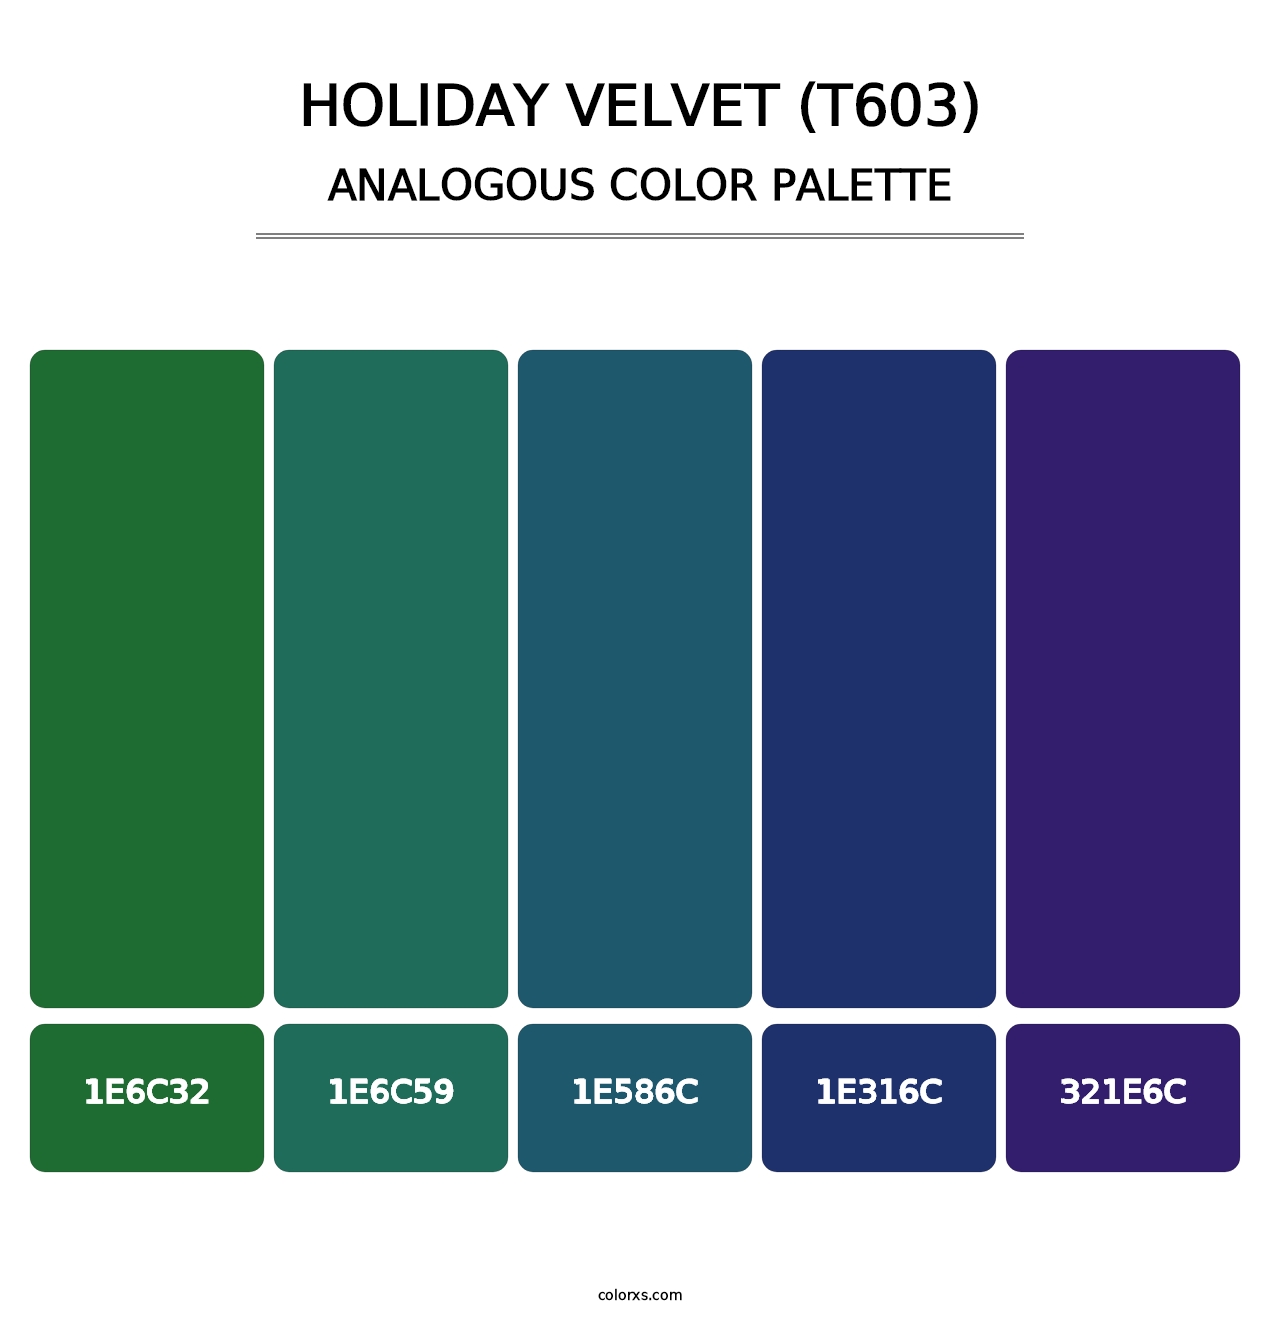 Holiday Velvet (T603) - Analogous Color Palette